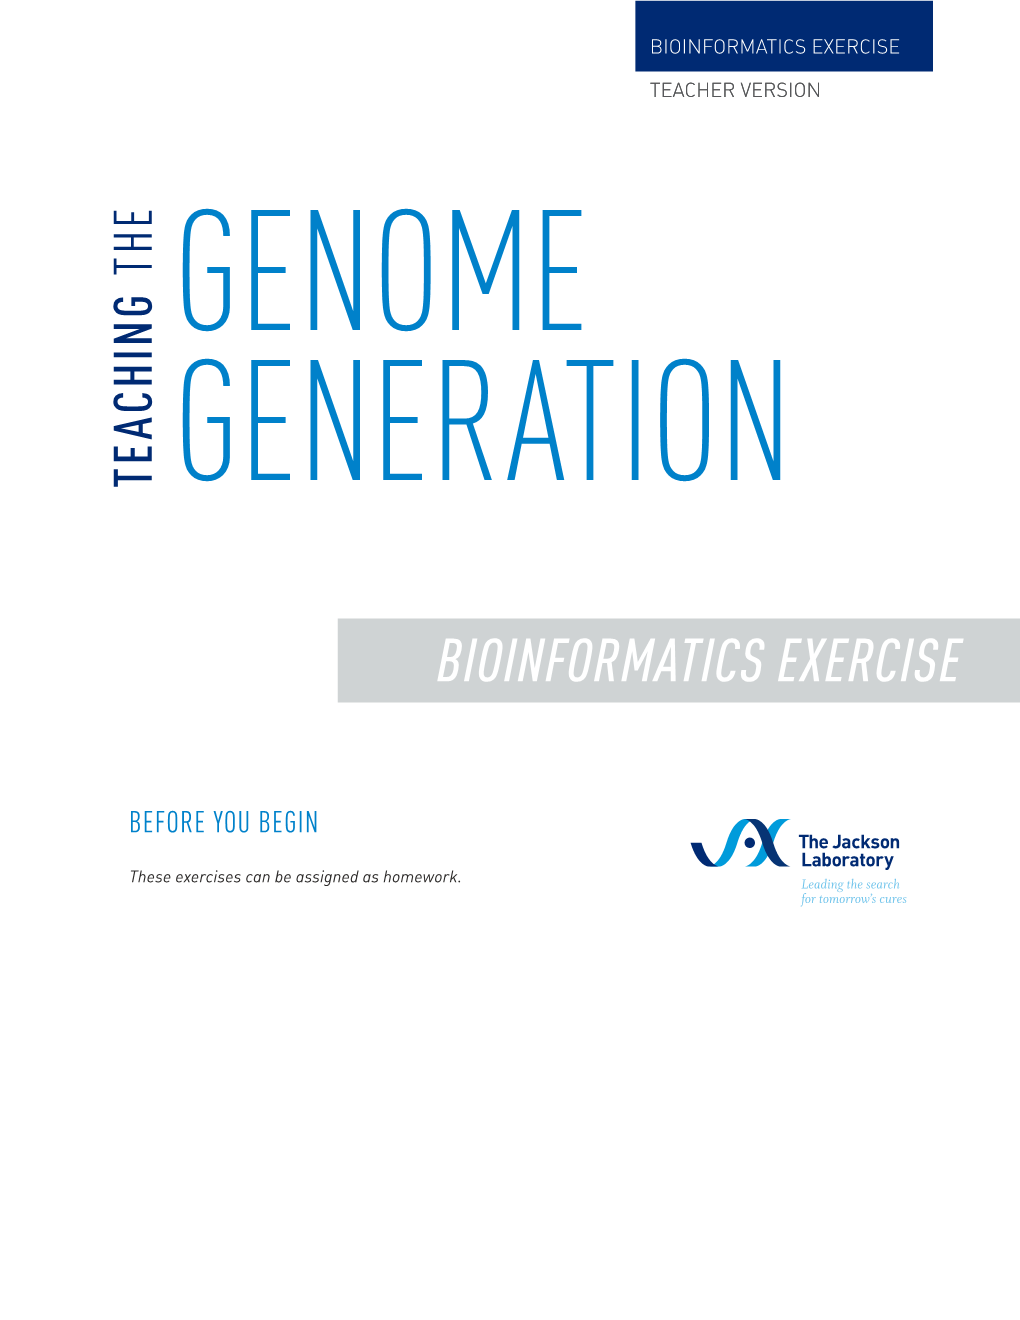 Bioinformatics Exercise